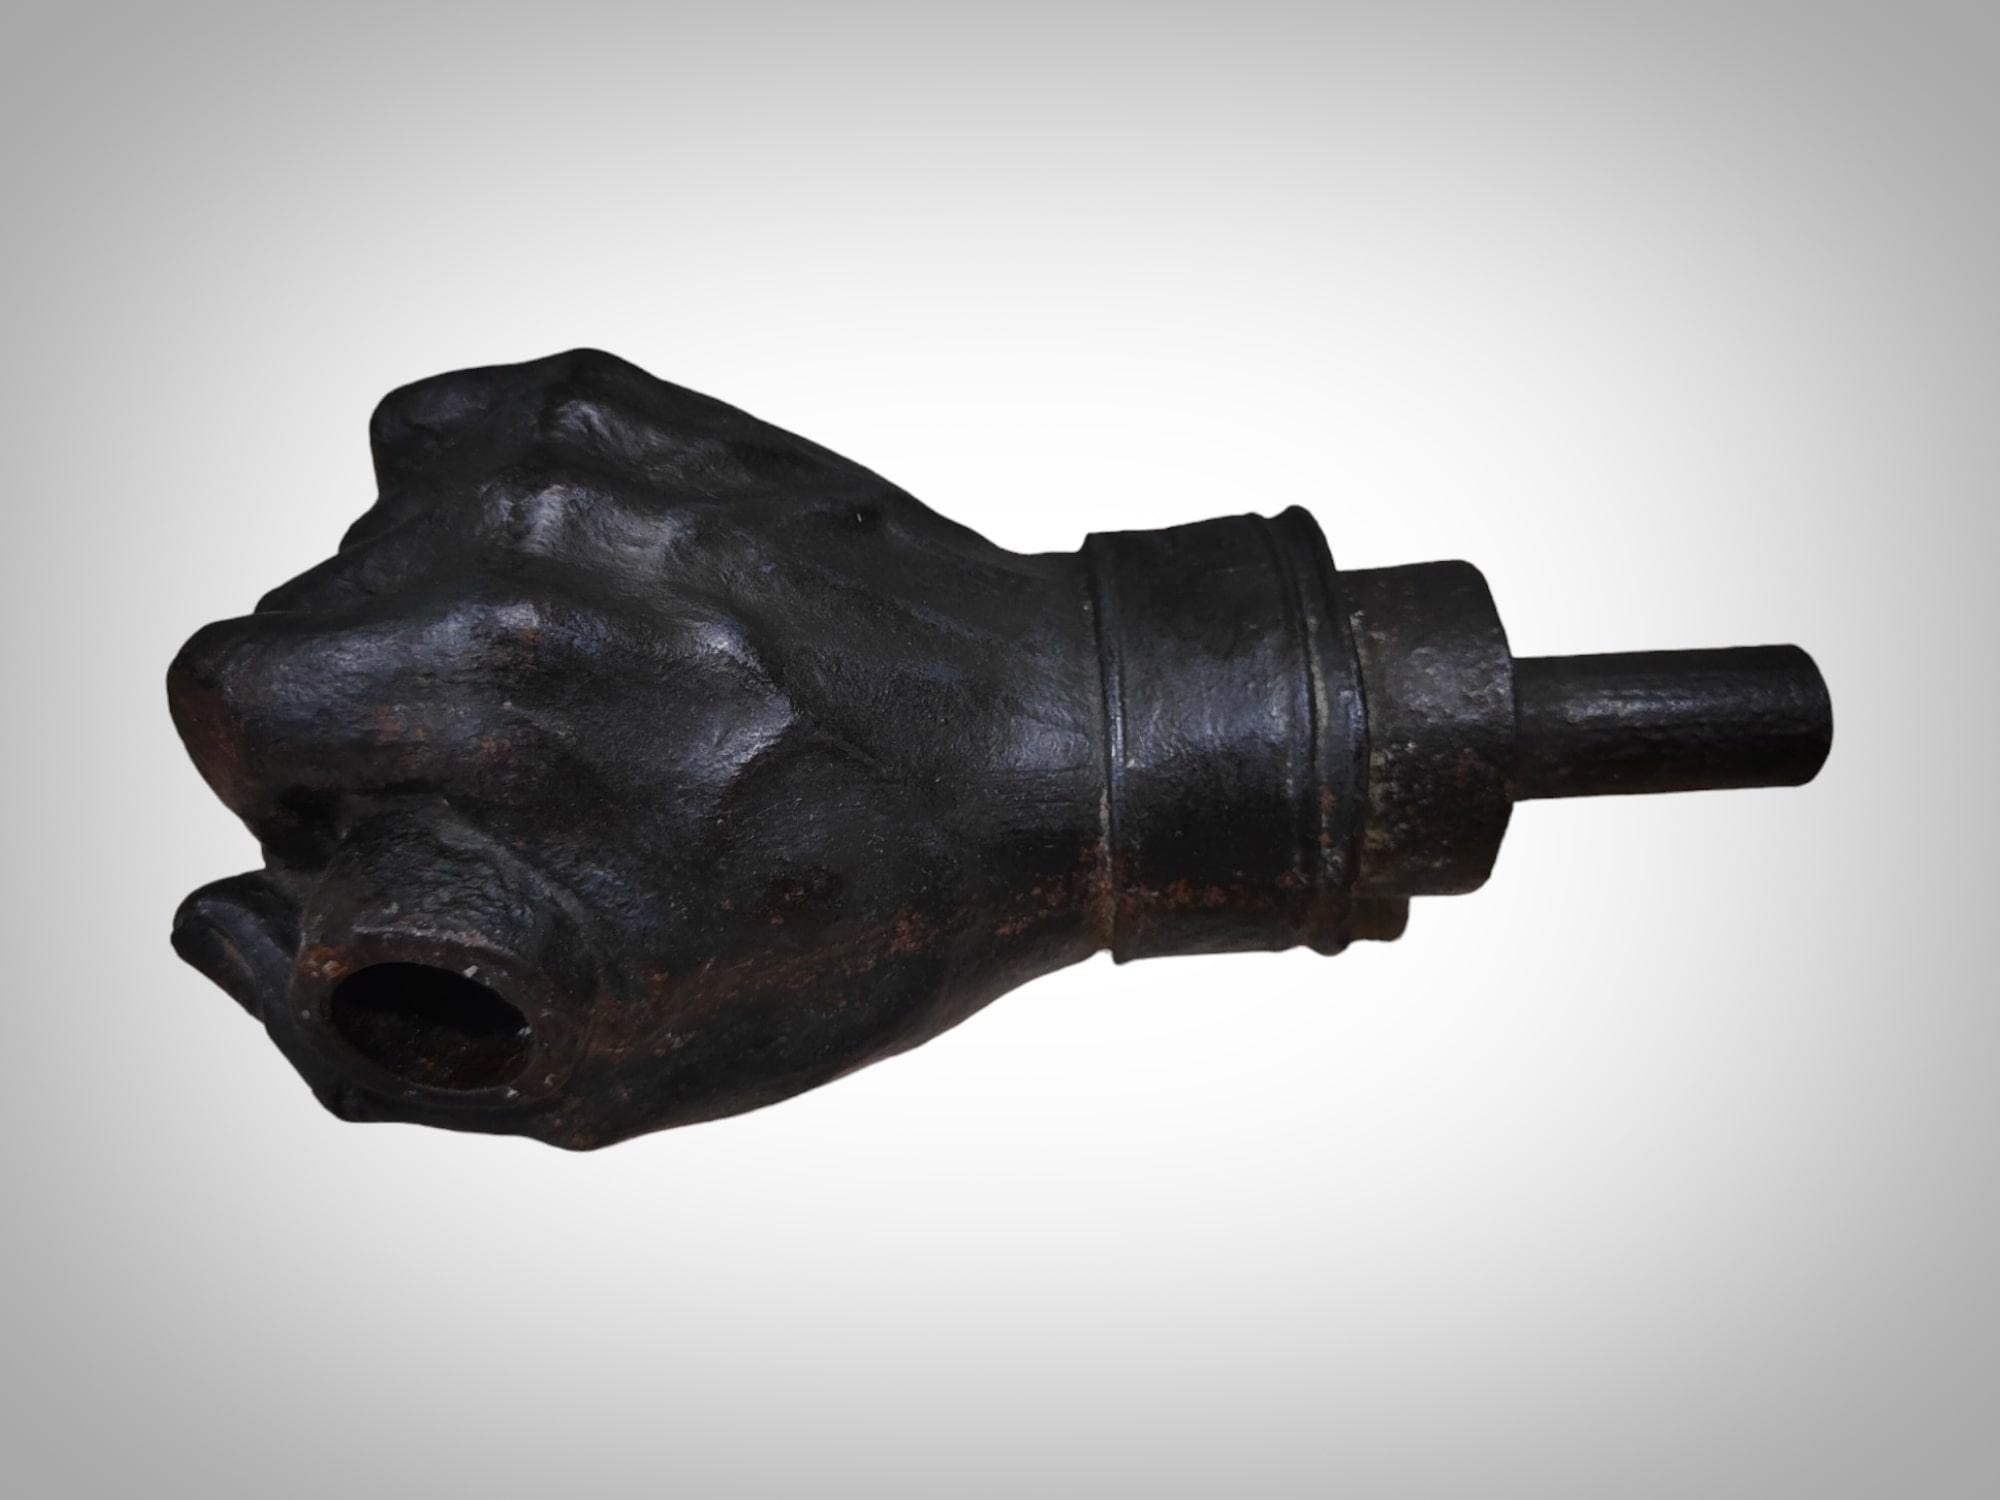 Nous vous présentons une élégante sculpture en fer forgé représentant une main, méticuleusement réalisée par un maître forgeron à la forge. Cette œuvre, exécutée avec différentes techniques de ferronnerie à chaud, reflète l'habileté artisanale et la